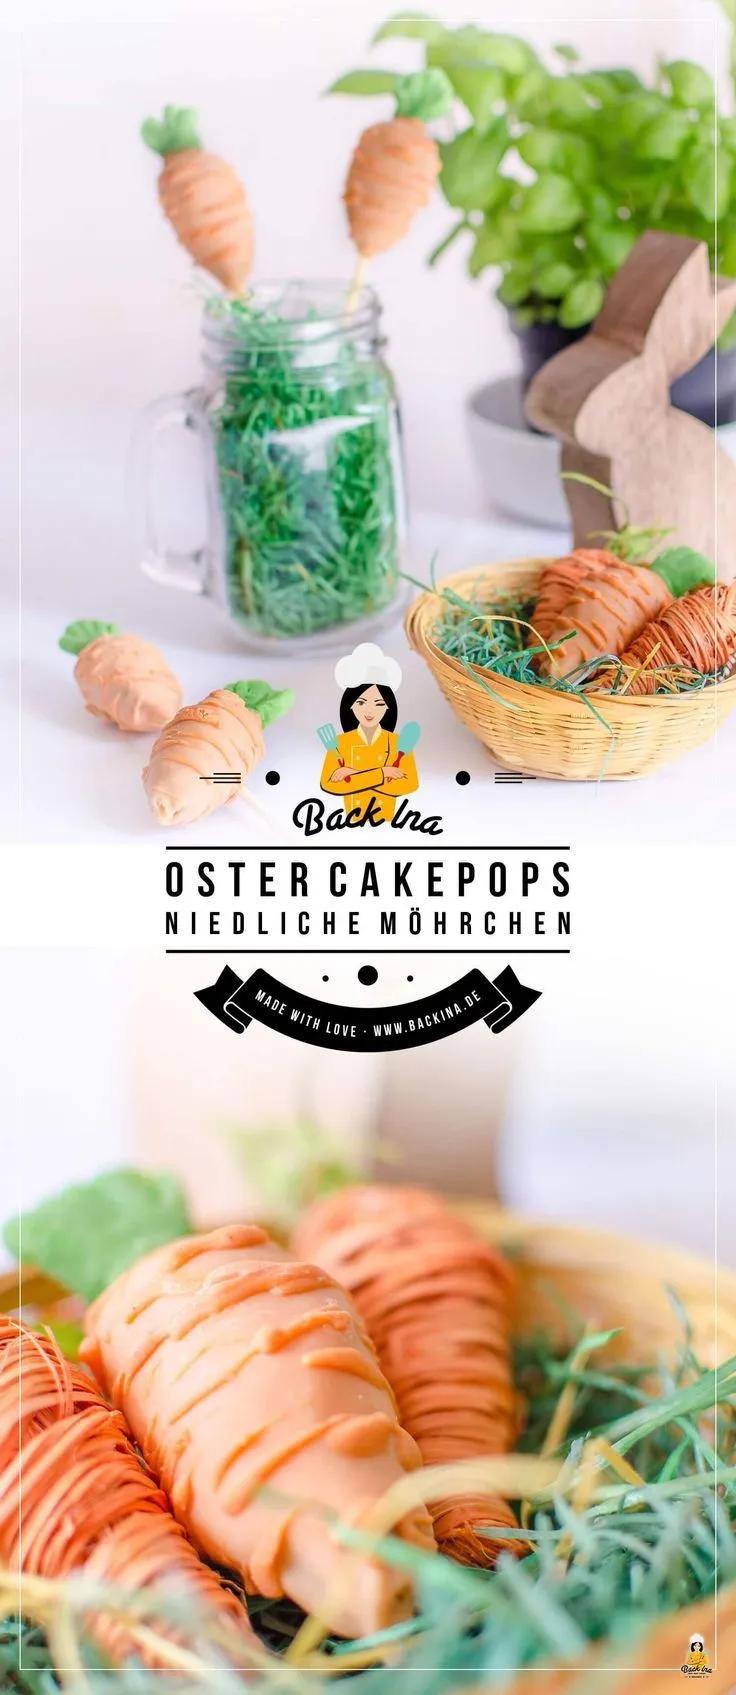 Oster Cakepops in Form von Möhrchen: Eine niedliche Aufmerksamkeit im ...